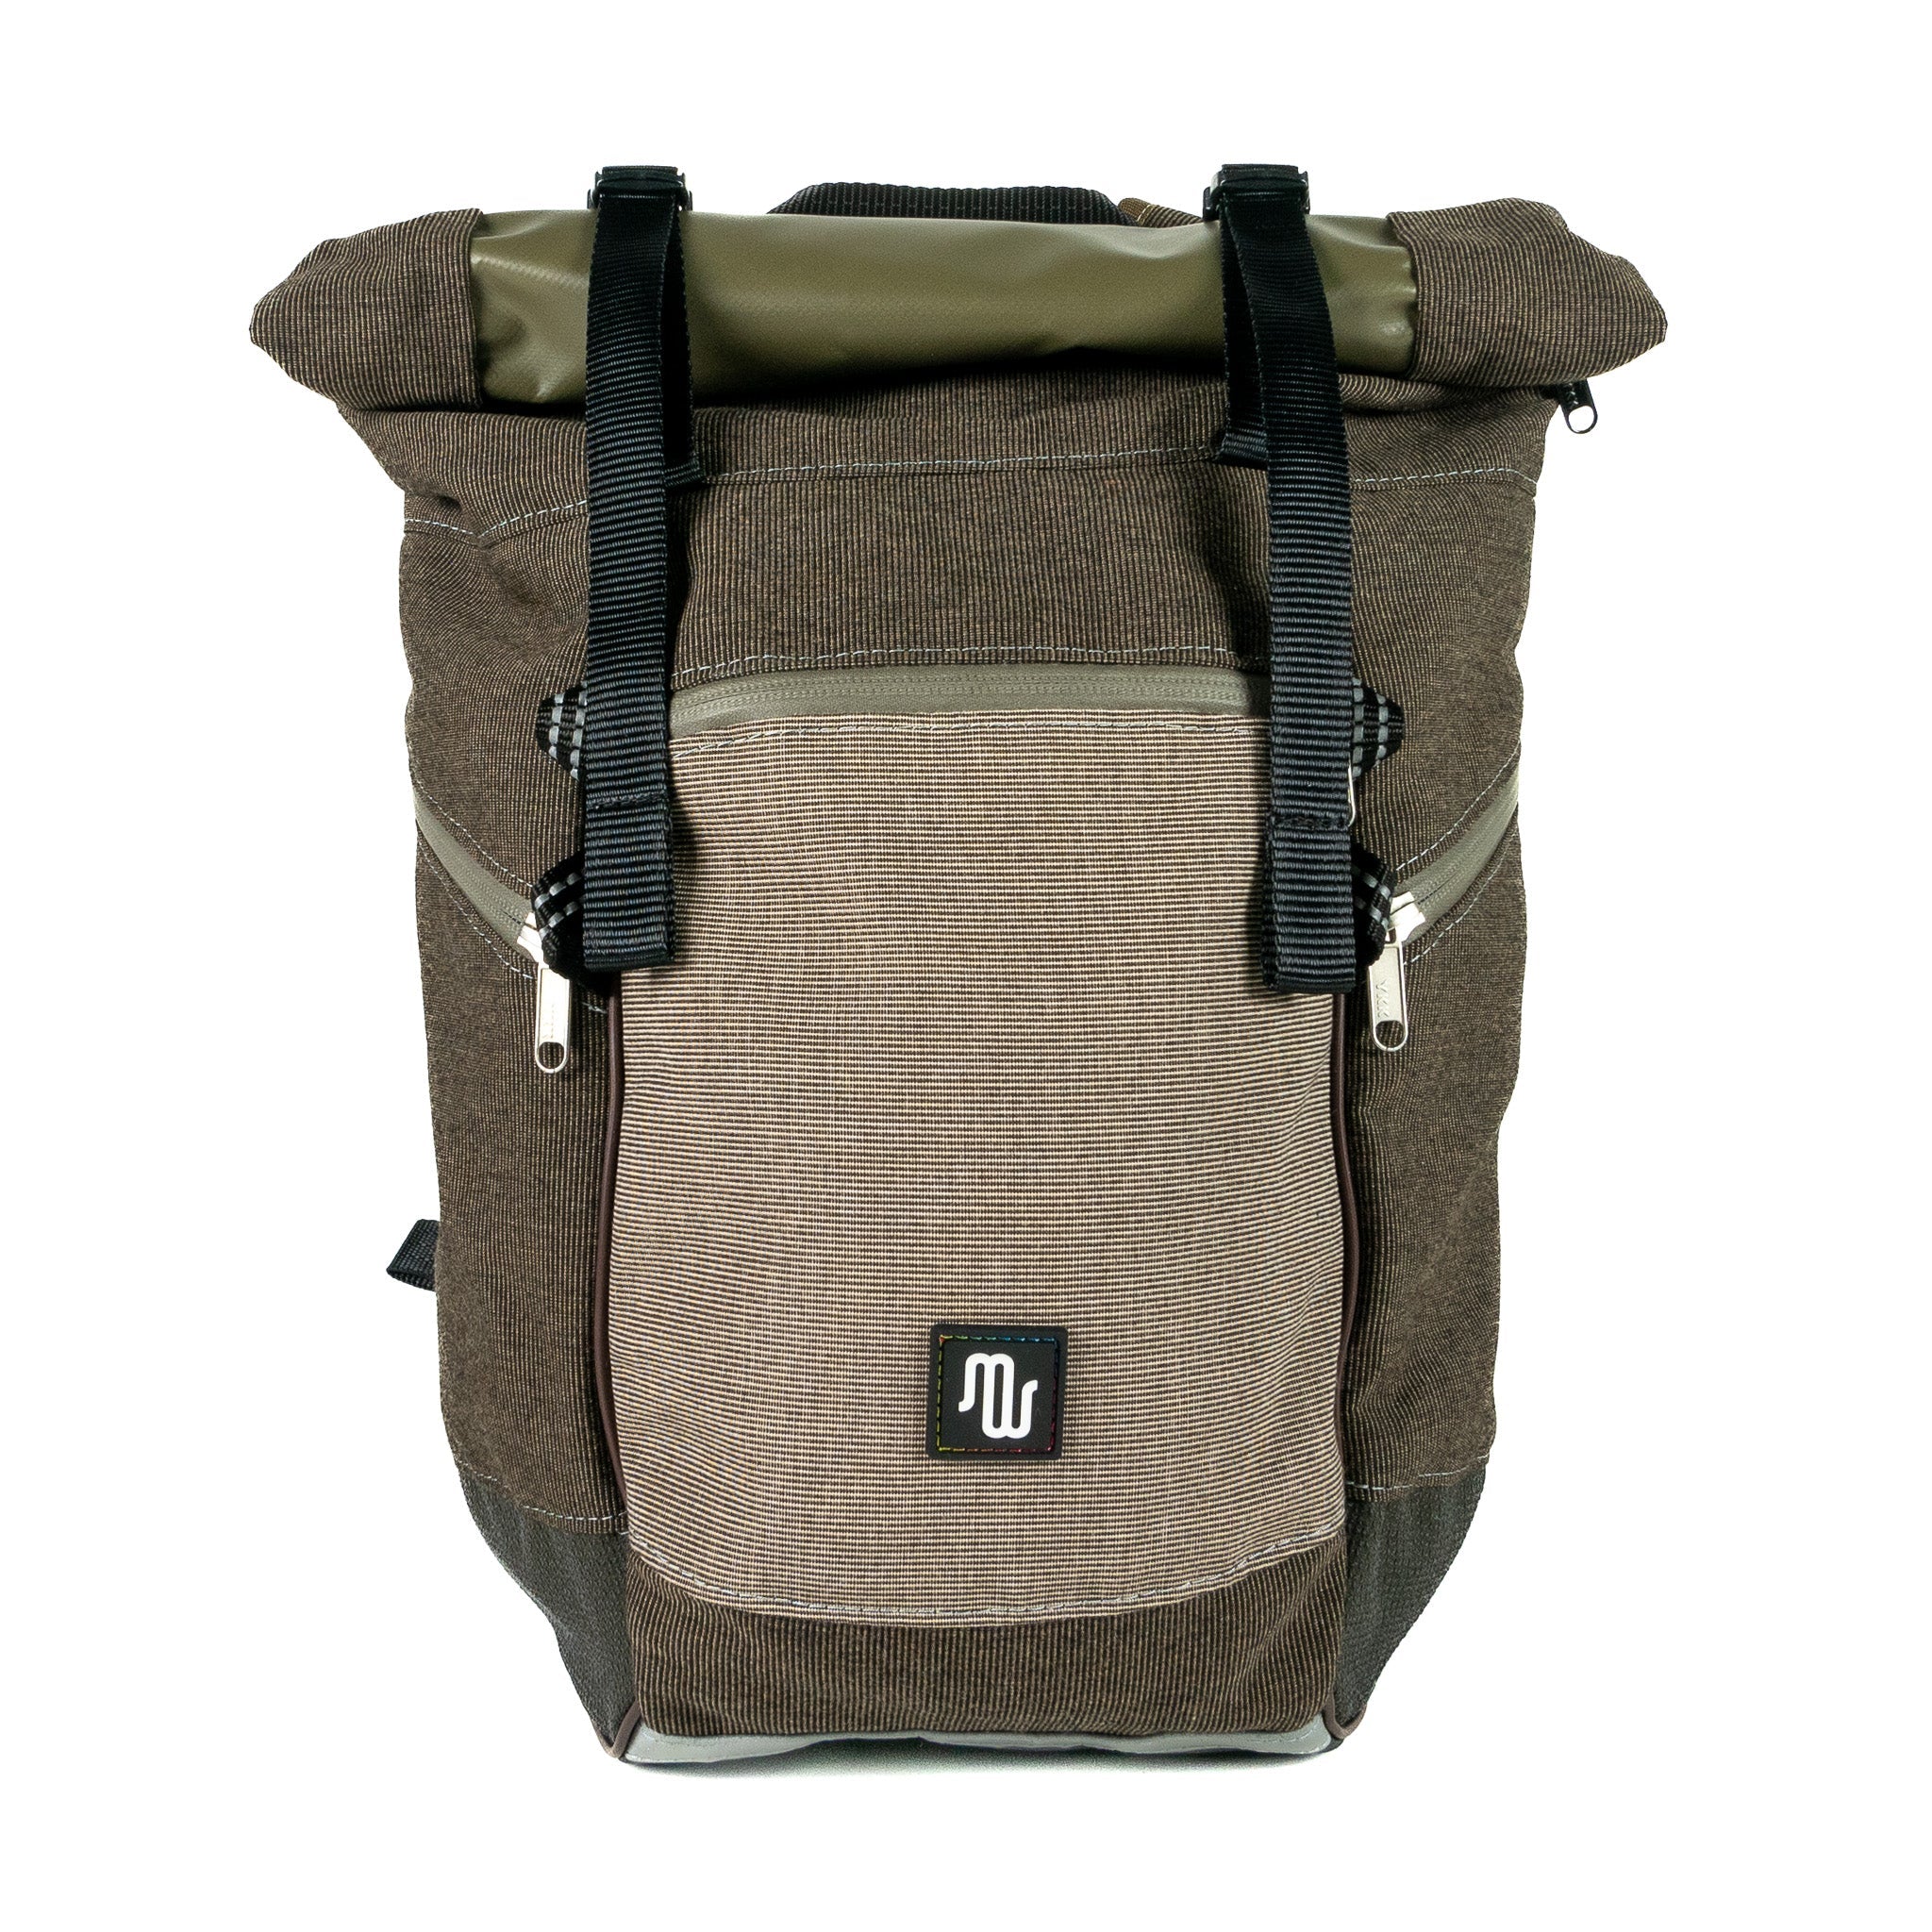 BUDDY No. 124 - Backpacks - medencebag